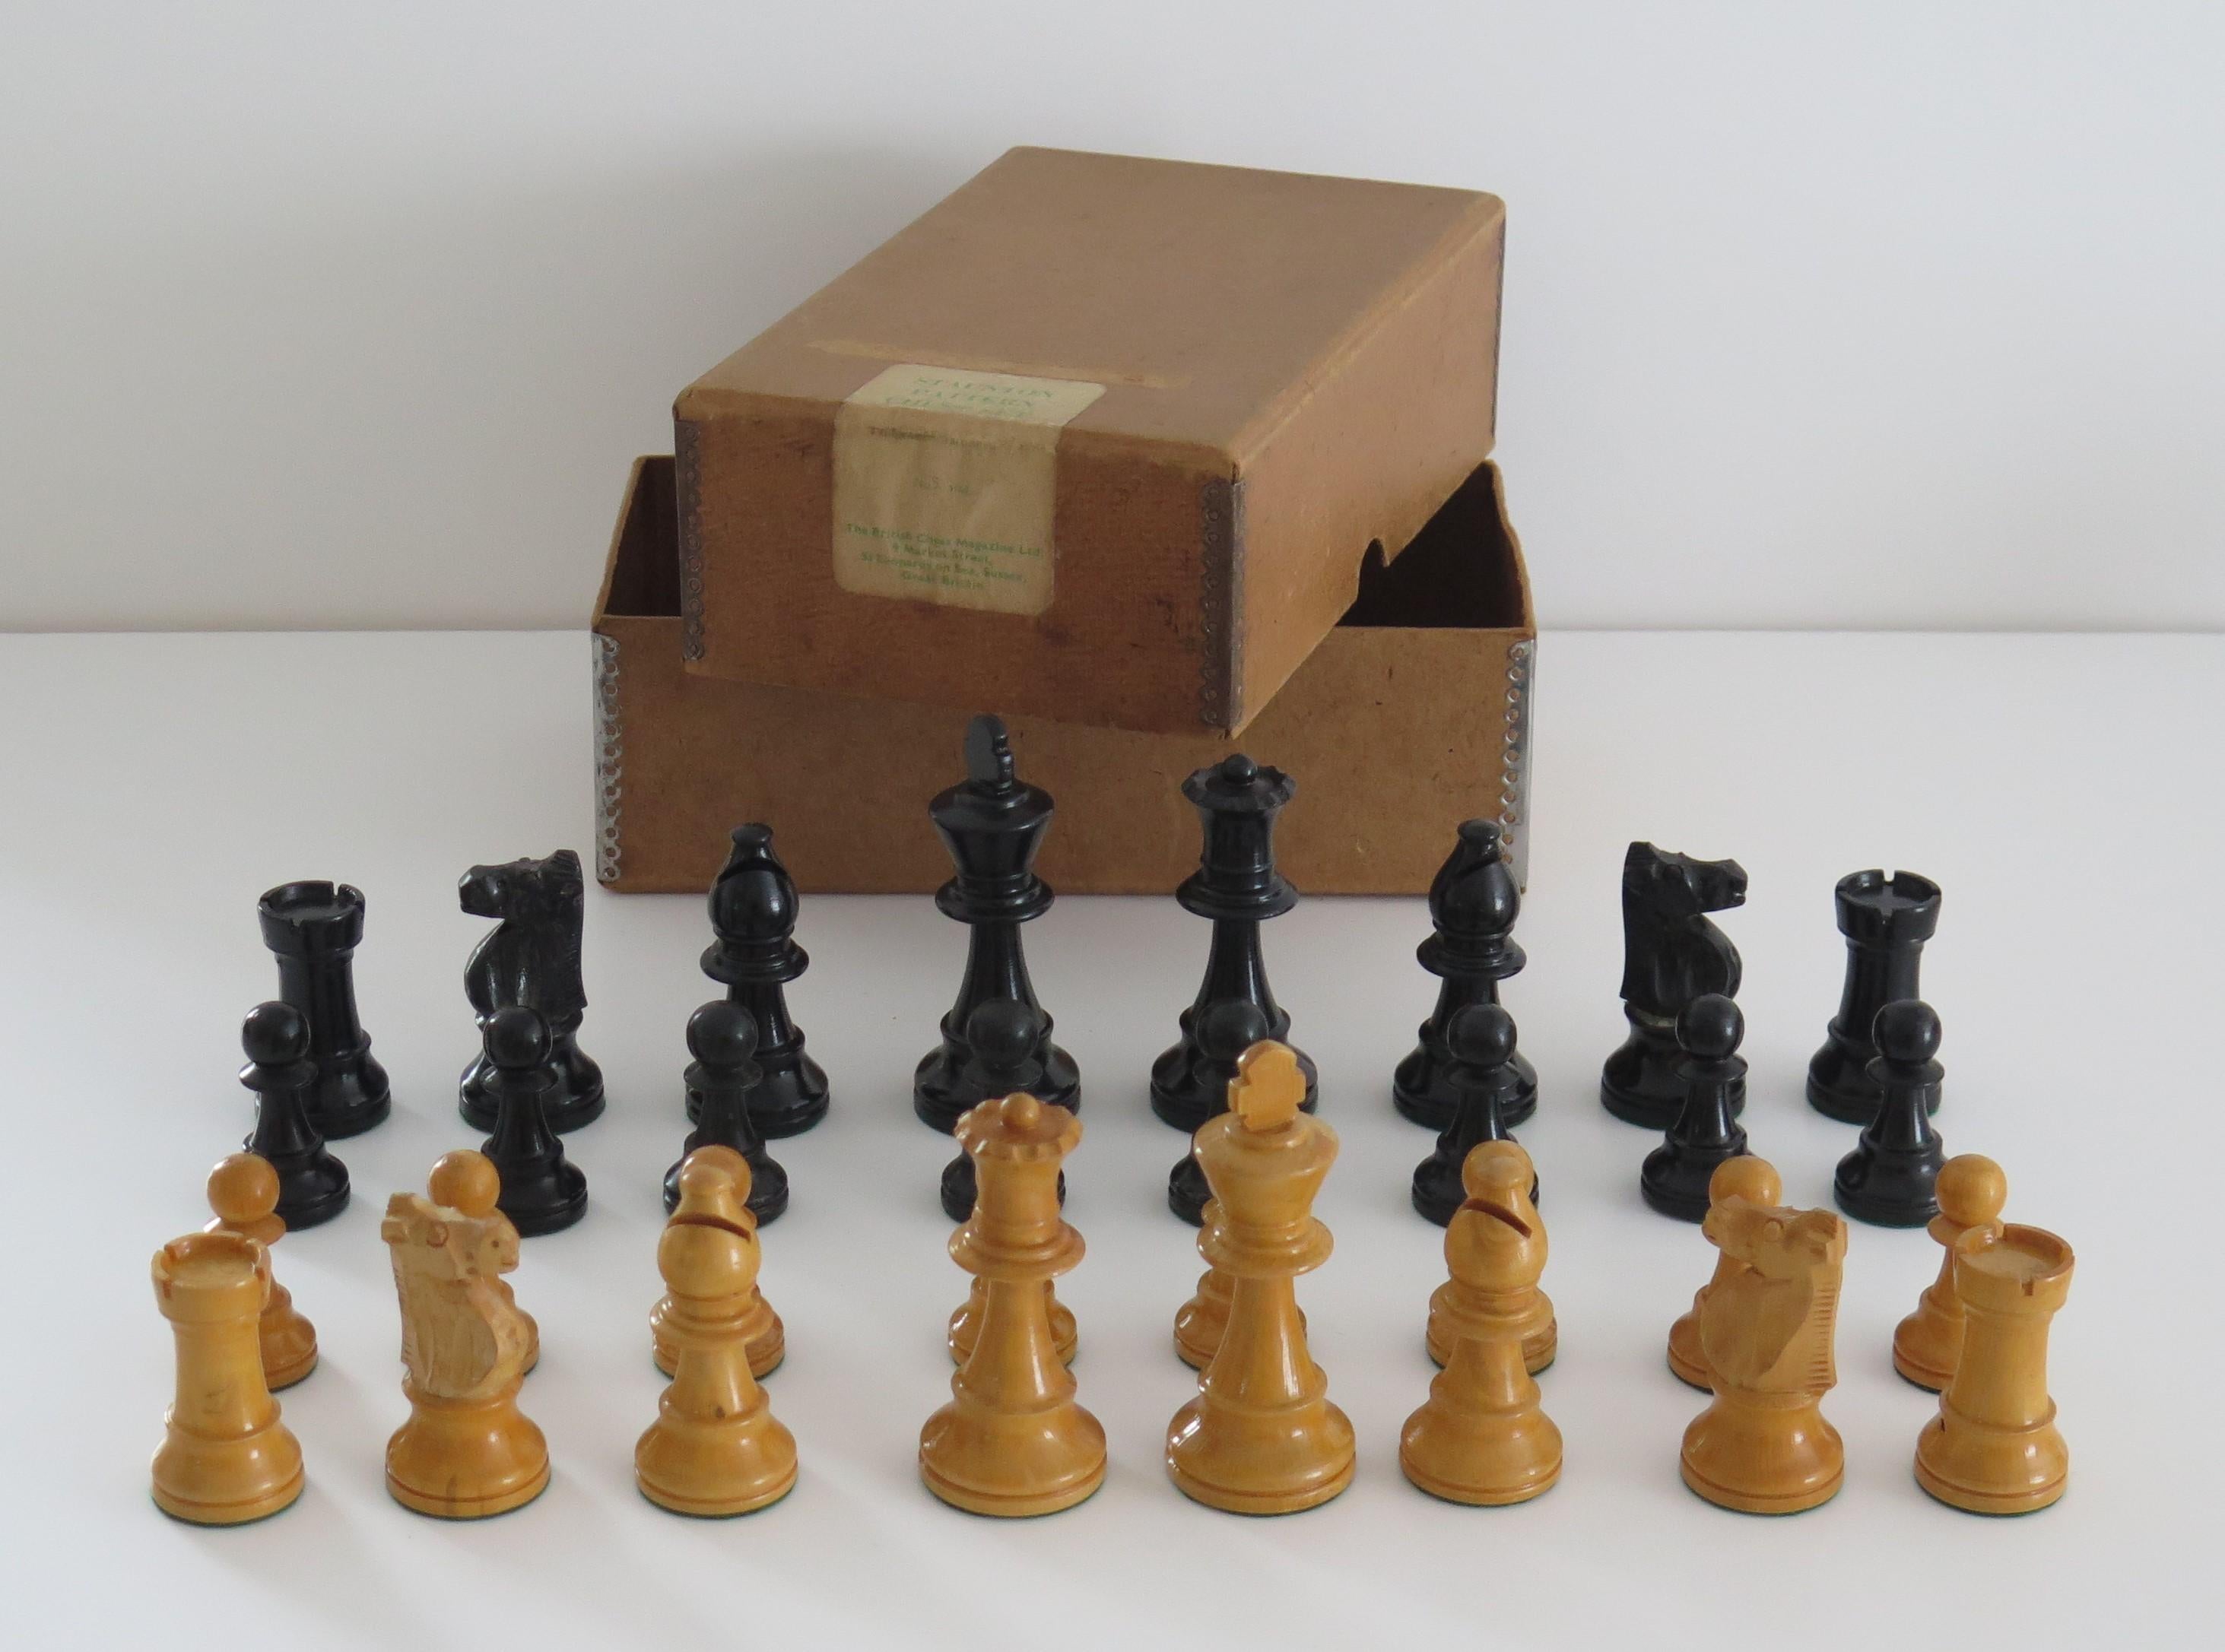 Il s'agit d'un très bon jeu d'échecs de 32 pièces en buis, de fabrication anglaise, de haute qualité, Staunton Pattern No. 5, dans sa boîte originale et vendu par The British Chess Magazine Ltd, datant de 1930.

Les pièces d'échecs sont faites de